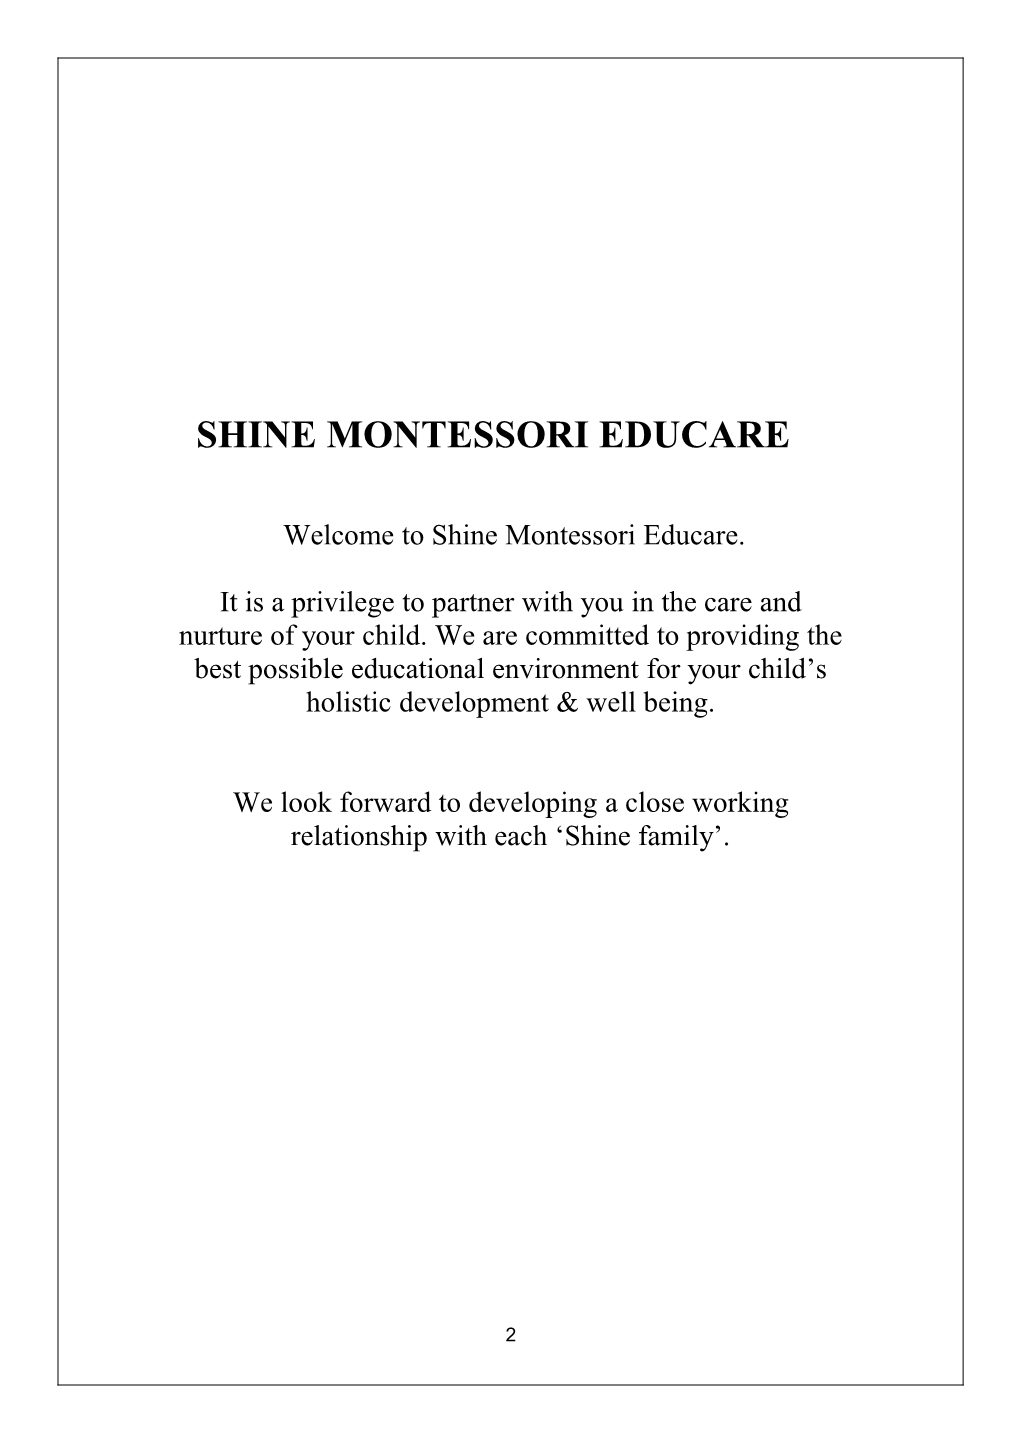 Shine Montessori Educare